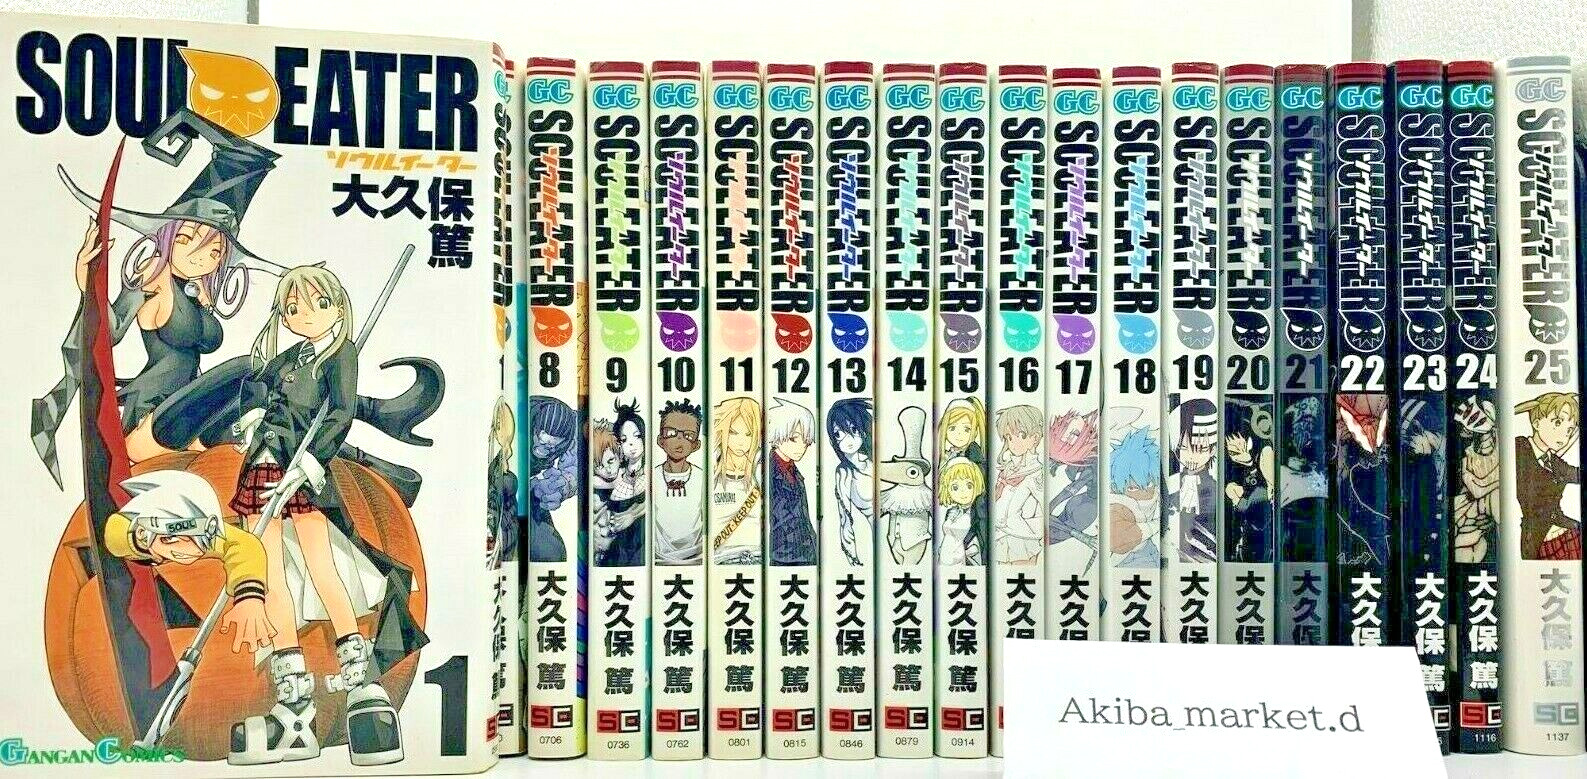 Soul Eater Vol.1-25 Complete Full Set Japanese ver Manga comics Atsushi Ohkubo